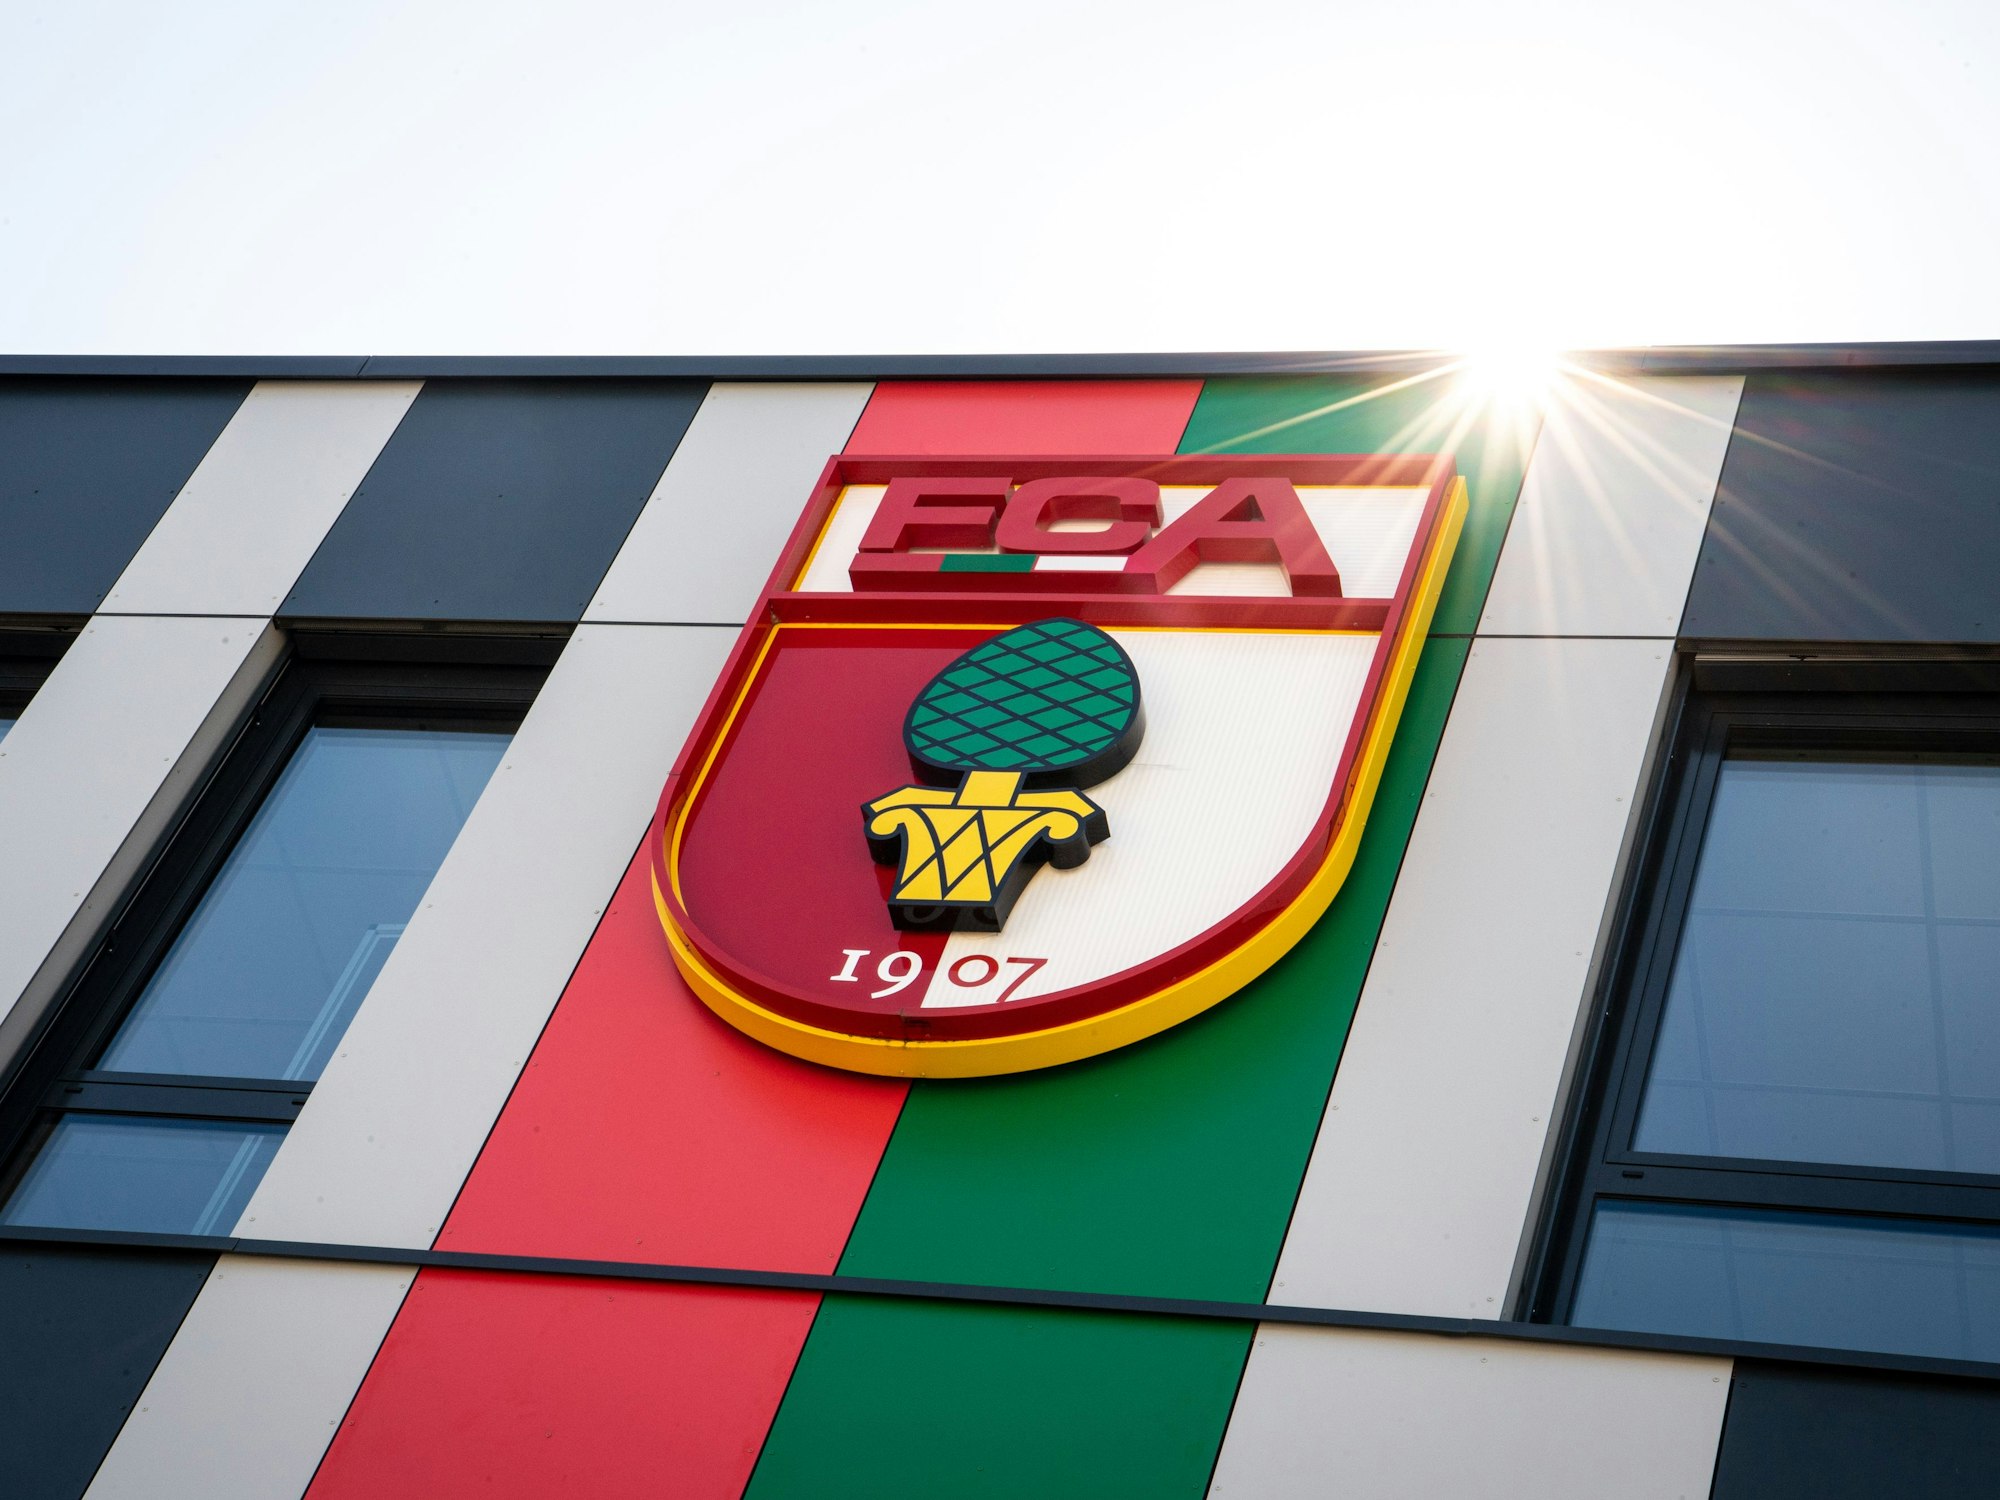 Das Vereinslogo des FC Augsburg, ein Wappen mit der Aufschrift FCA und der Abbildung einer Zirbelnuss, ist auf der Fassade der Geschäftsstelle des FC Augsburg an der WWK-Arena zu sehen.